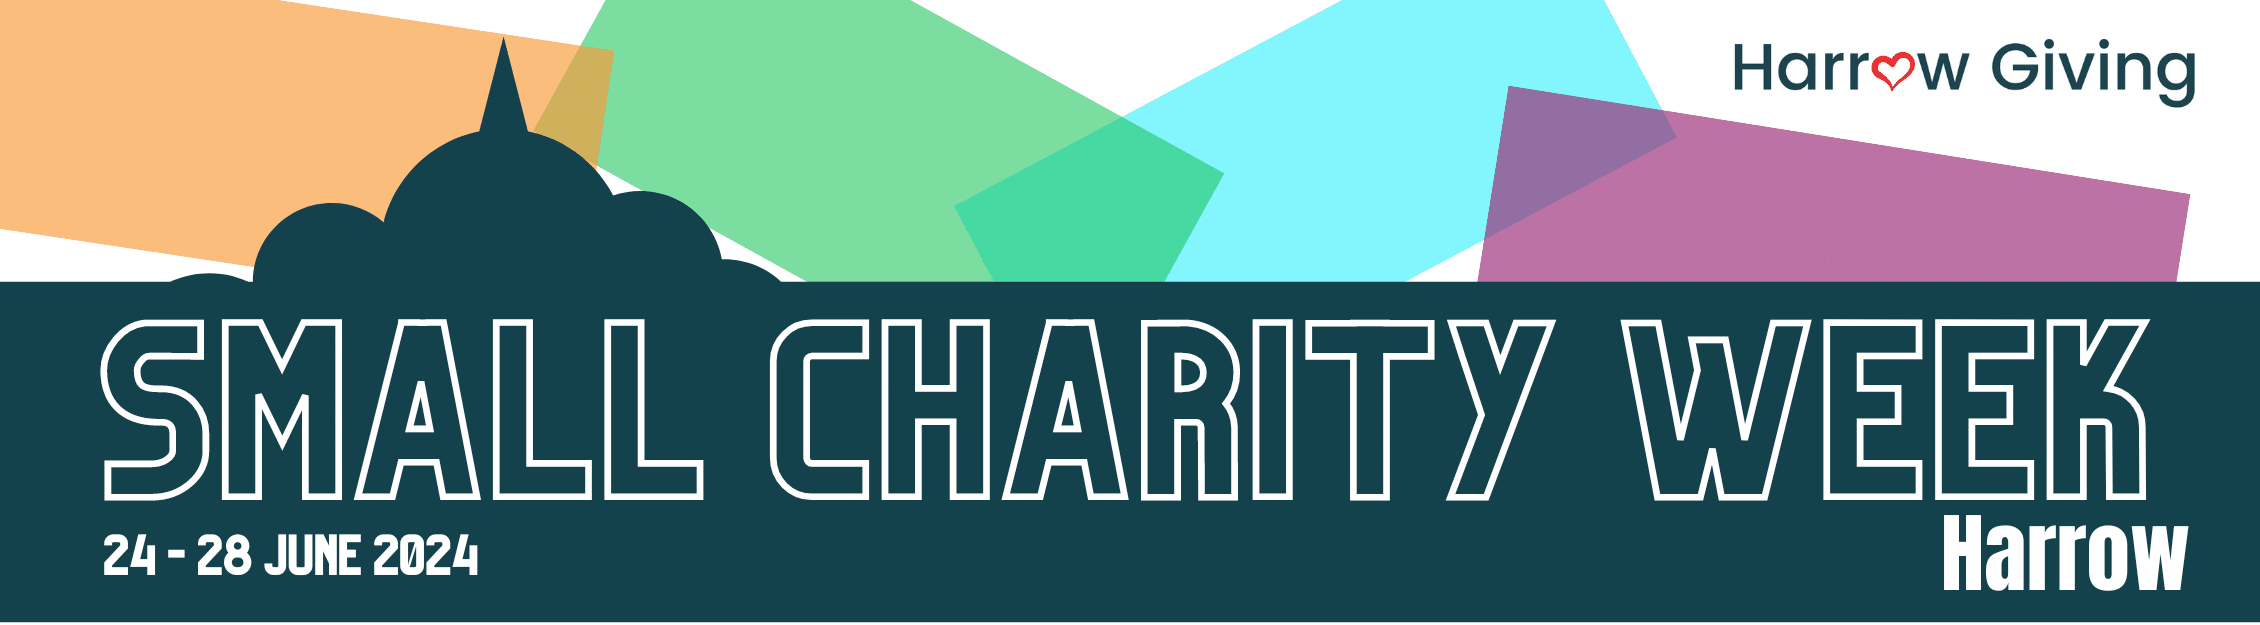 Small Charity Week Harrow banner